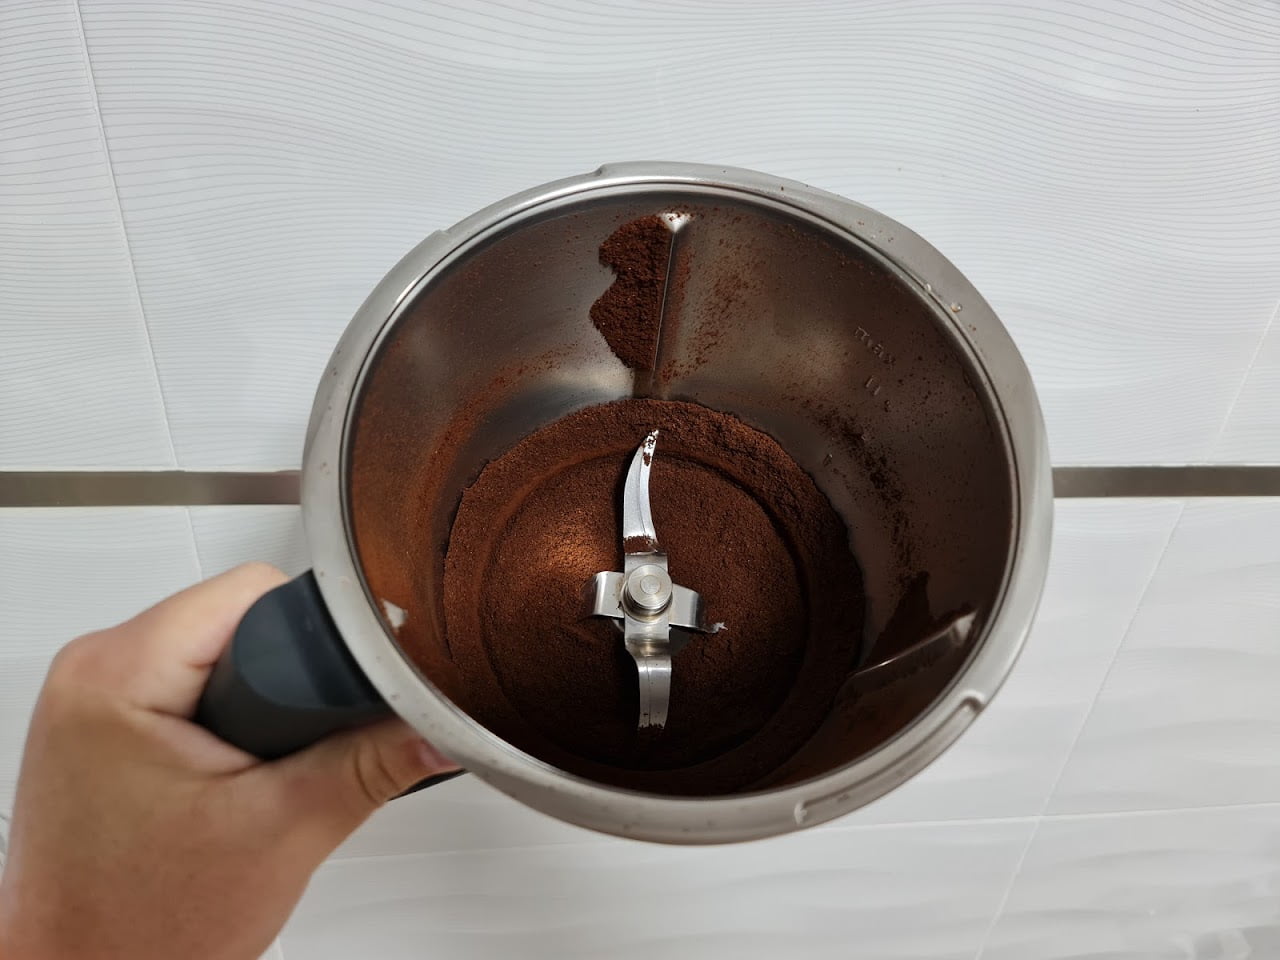 Foto de vaso de thermomix lleno de café ya molido en esta